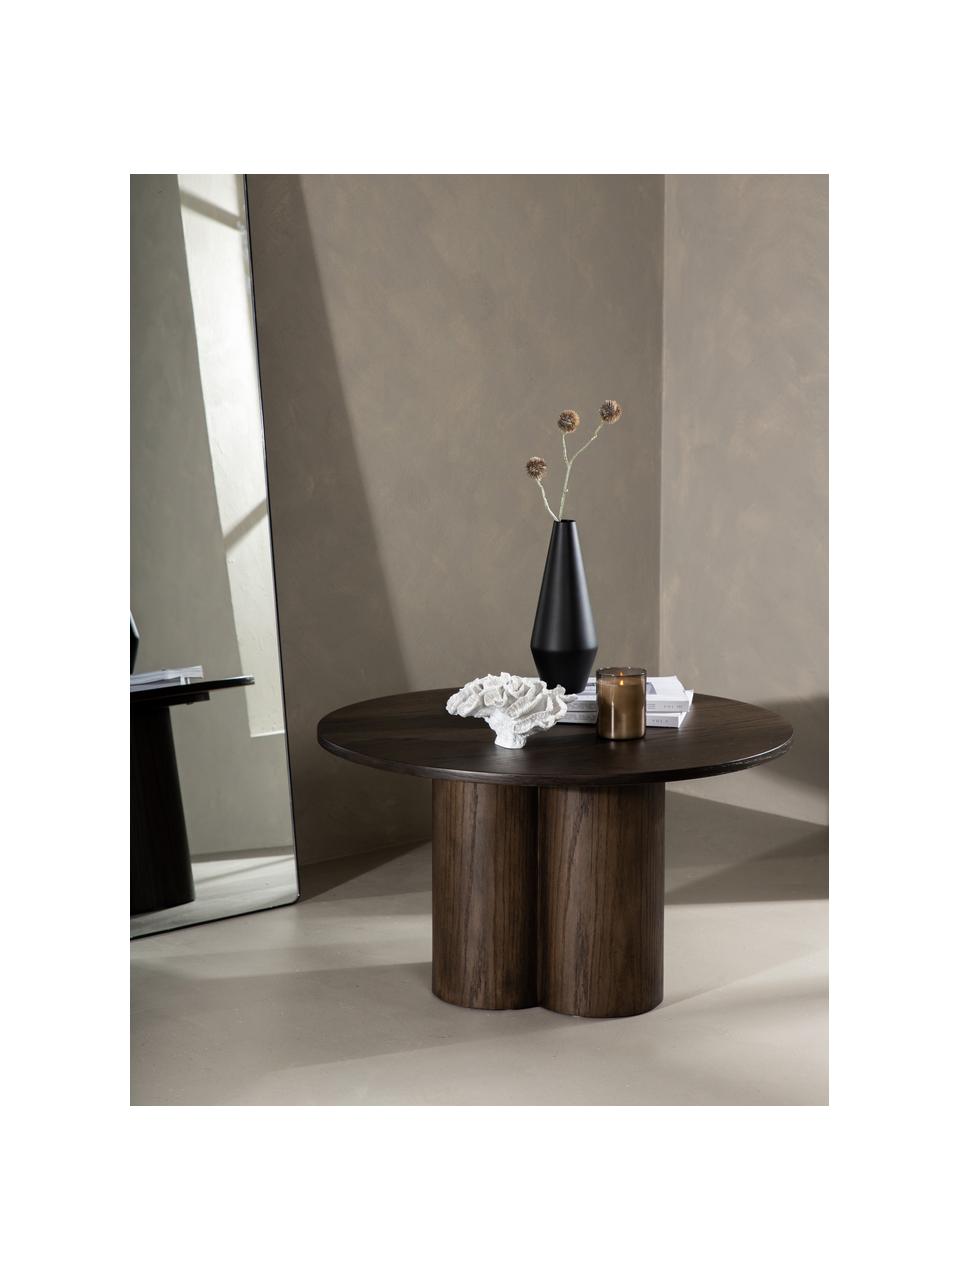 Tavolino rotondo da salotto in legno Olivia, Pannello MDF (fibra a media densità) con finitura in legno di quercia, Legno, scuro verniciato, Ø 80 cm